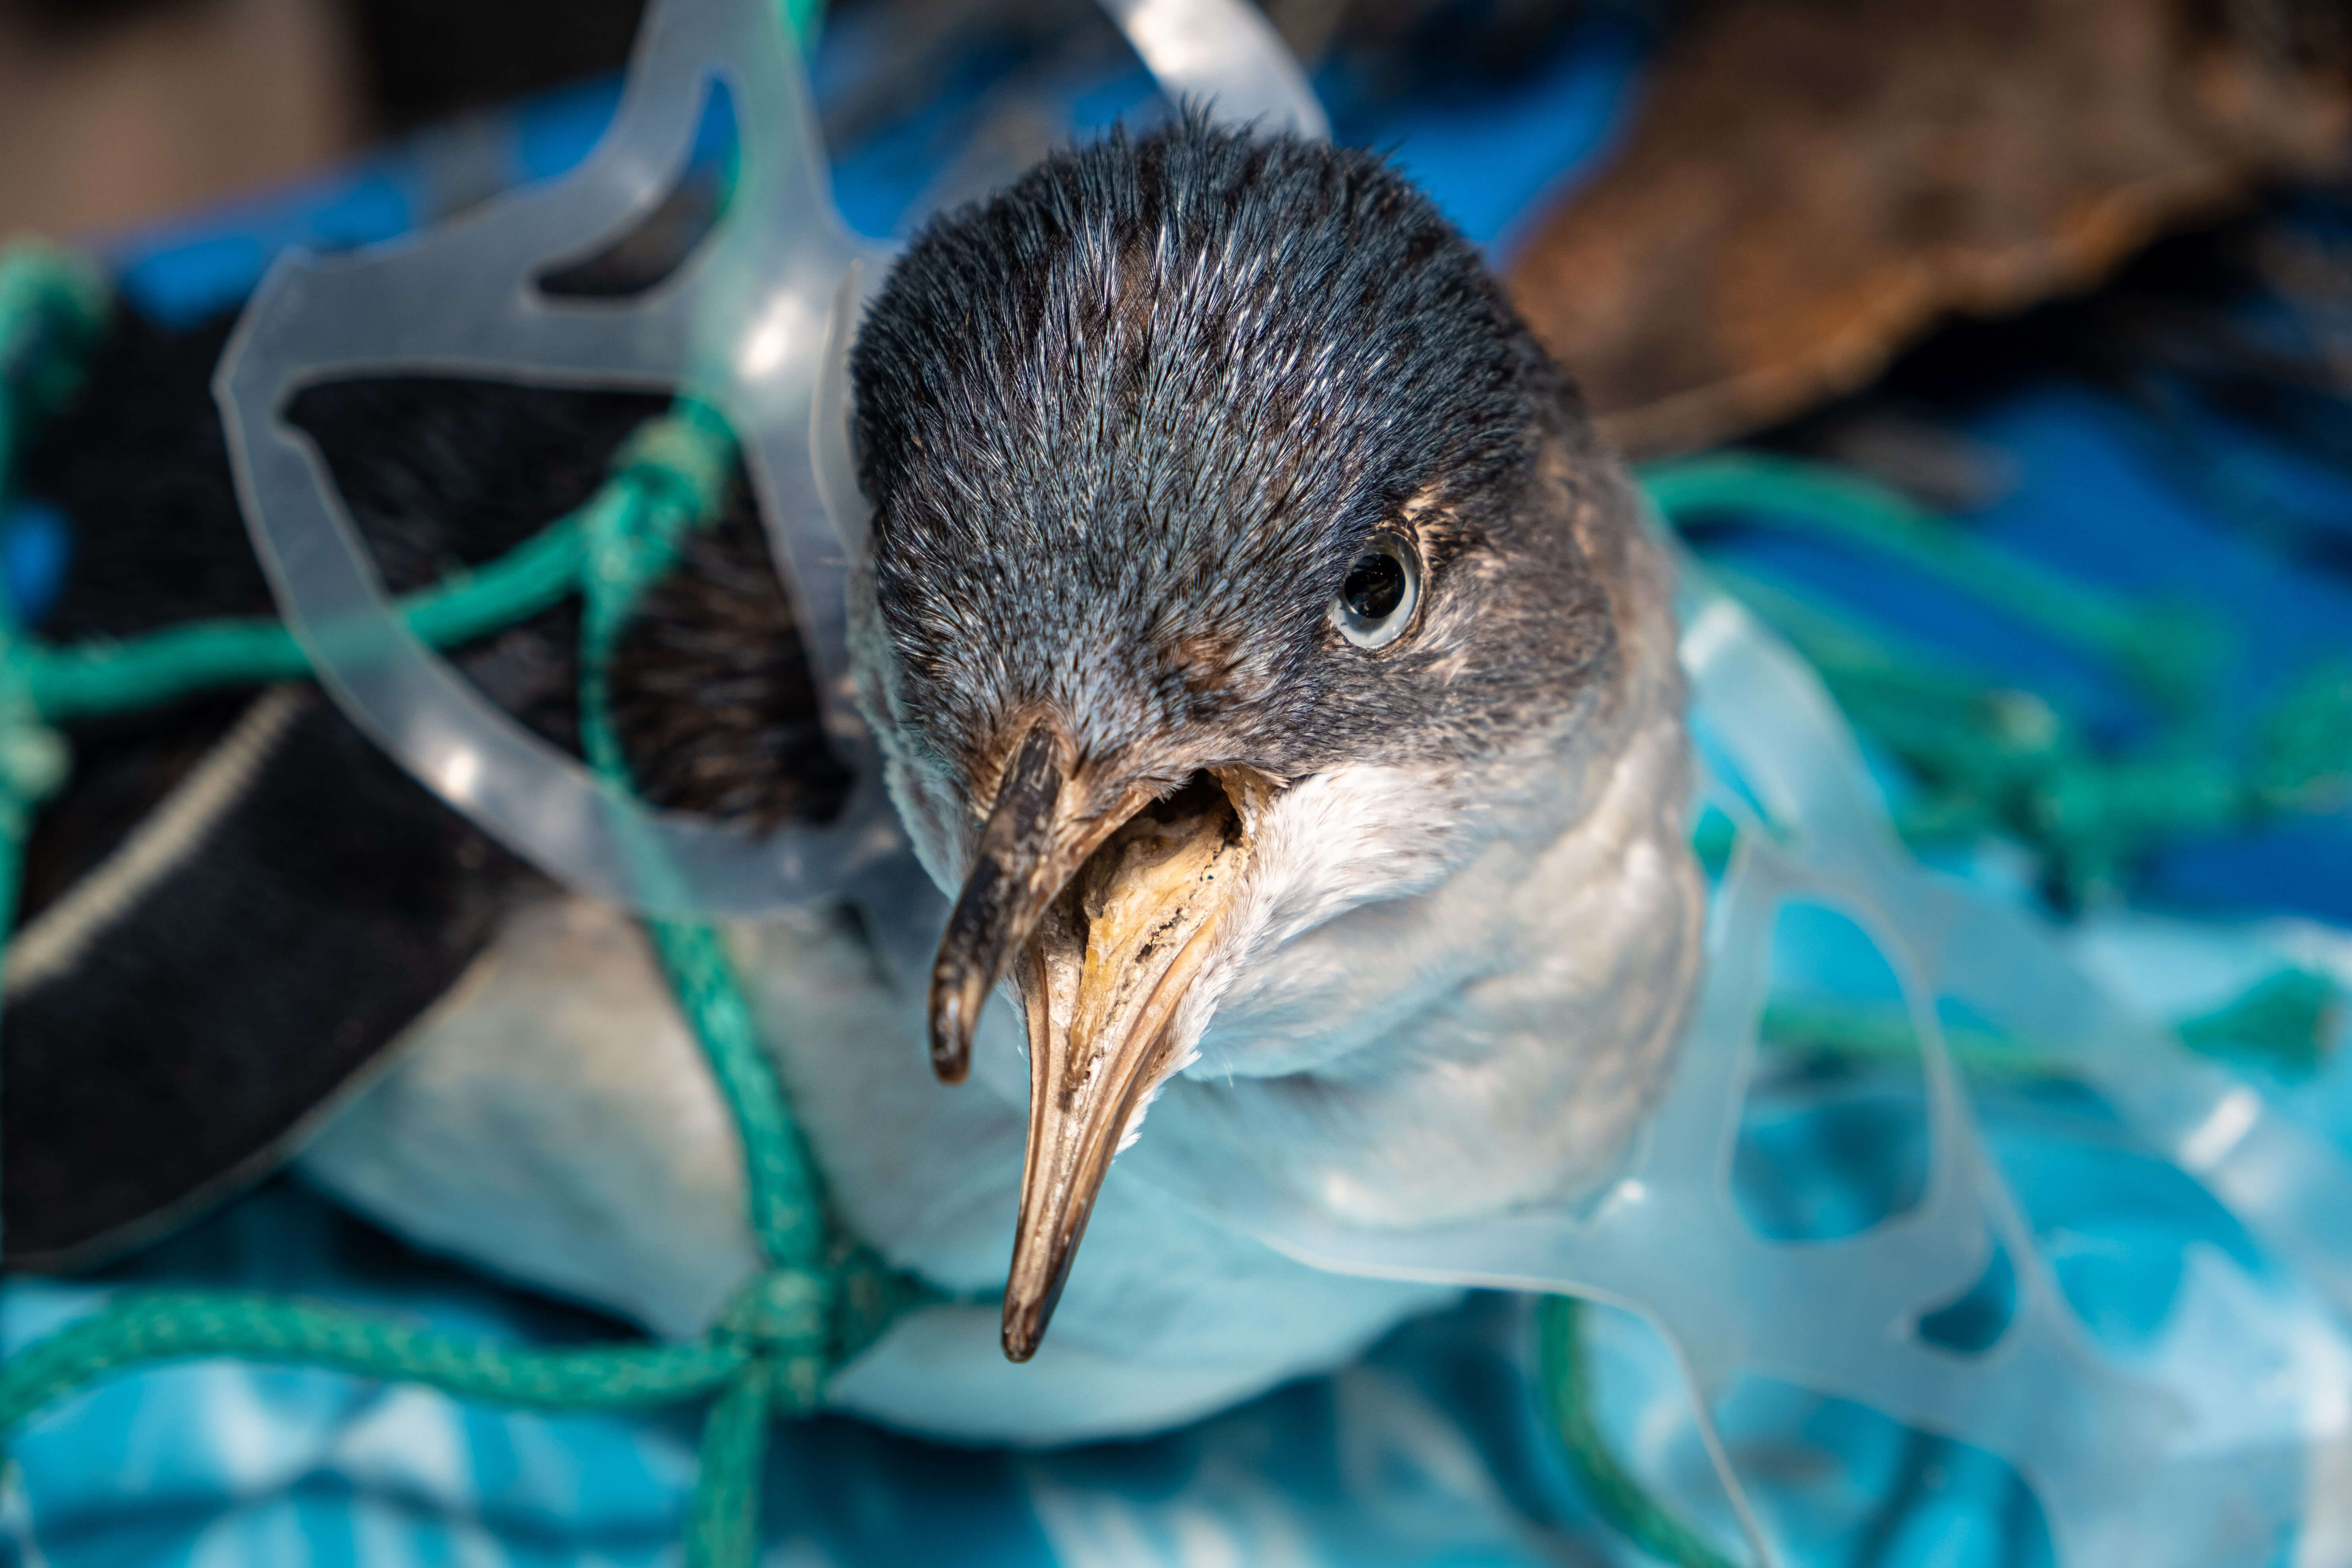 Penguin entangled in plastic 6 pack can holder